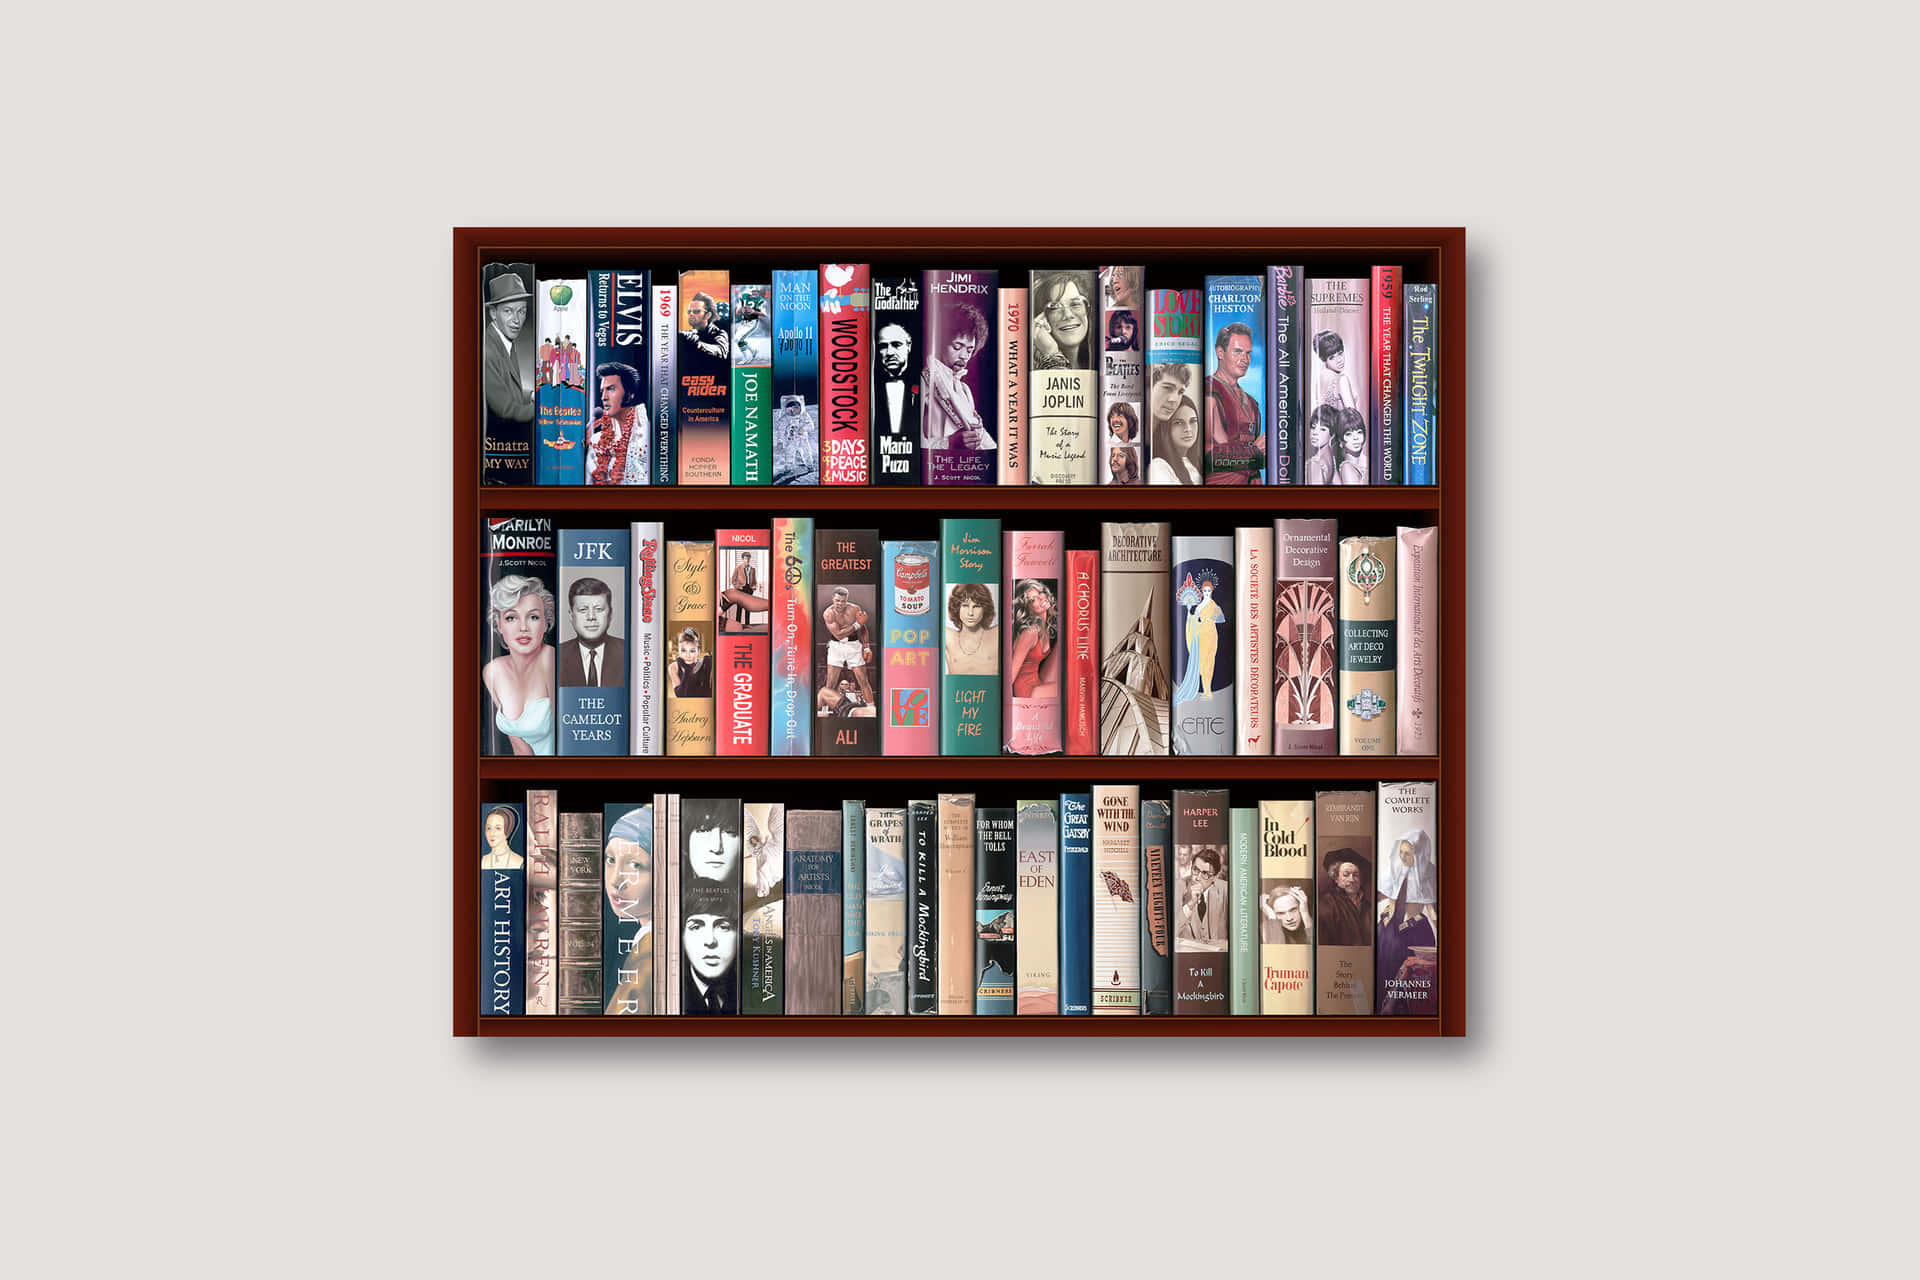 Bookshelf Pictures Wallpaper